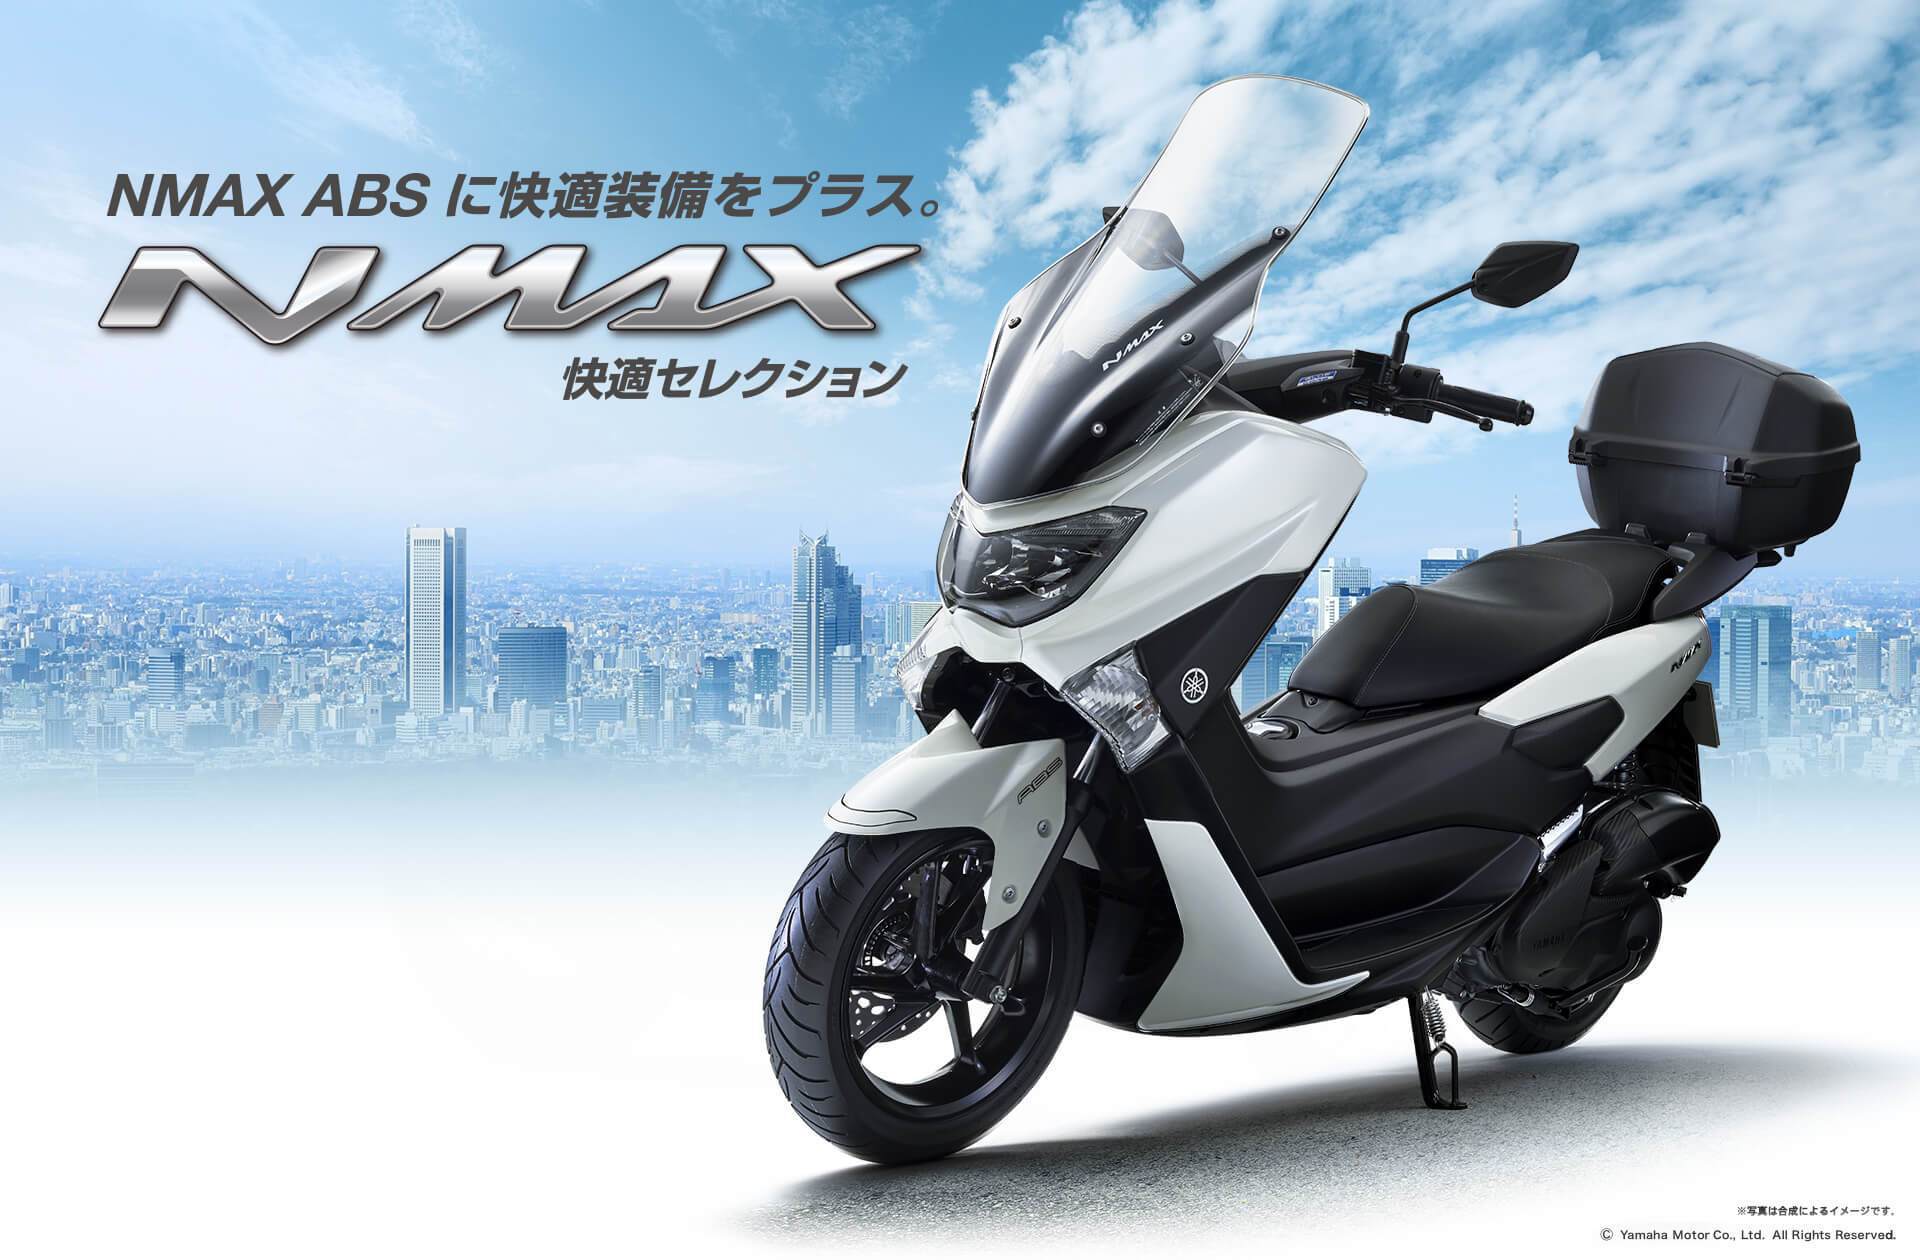 Modifikasi Yamaha Nmax Terbaru. Modifikasi Motor Yamaha N-Max, Enaknya Pakai Konsep Apa?